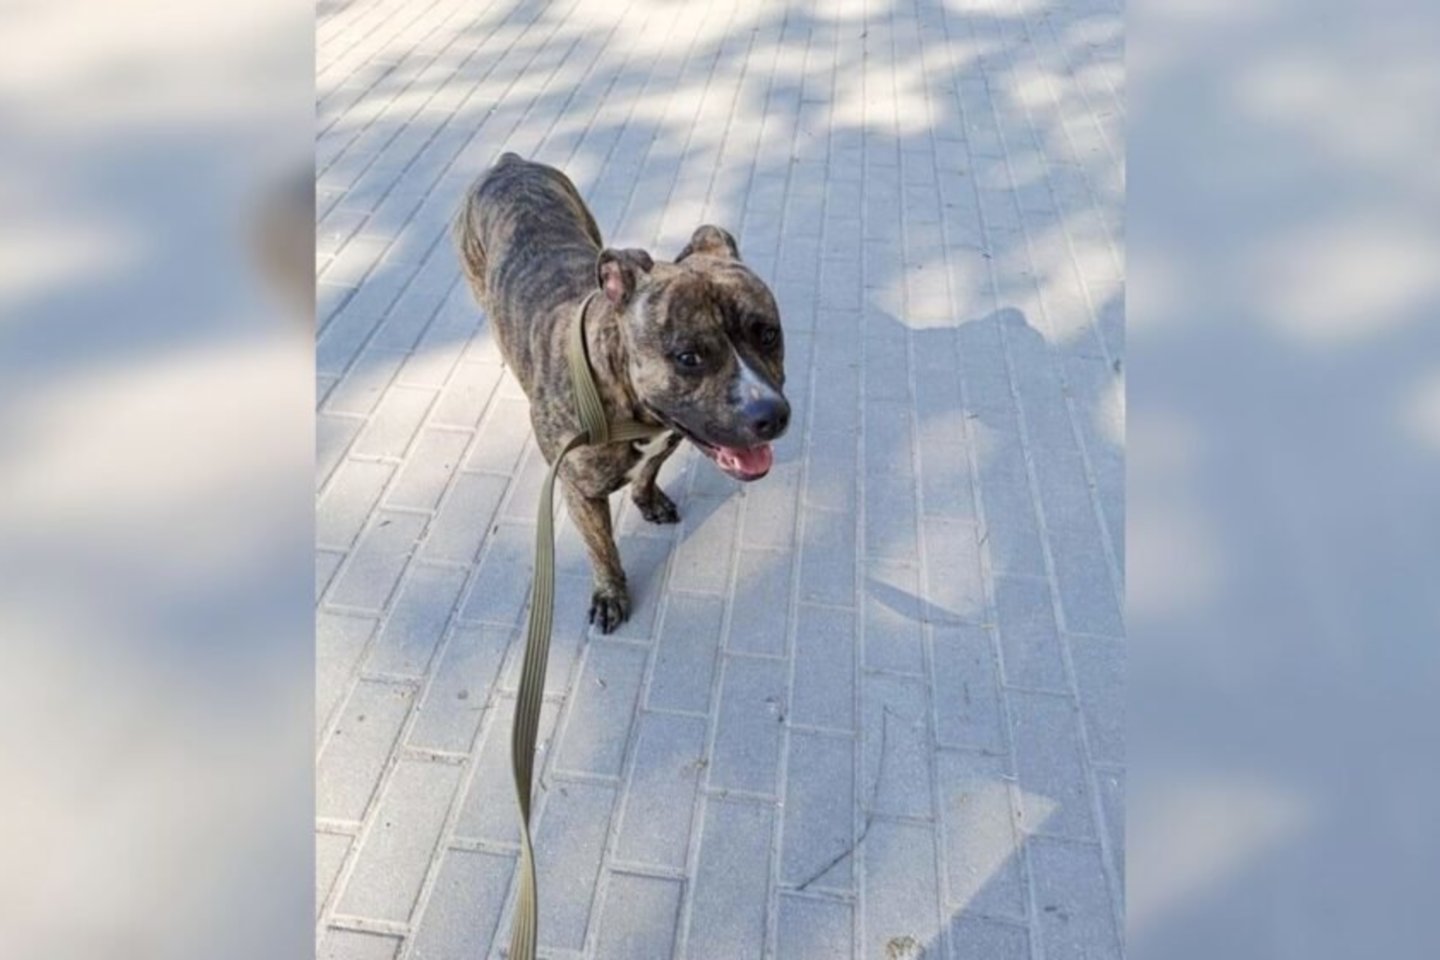  Pabėgusį šunį gaudė jo šeimininkas, tačiau sugauti pavyko tik vienai moteriai. Ji šunį sugavo Vytauto parke. Gyvūnas perduotas savininkui.<br>„Rinkos aikštės“/Kėdainiečių nuotr.